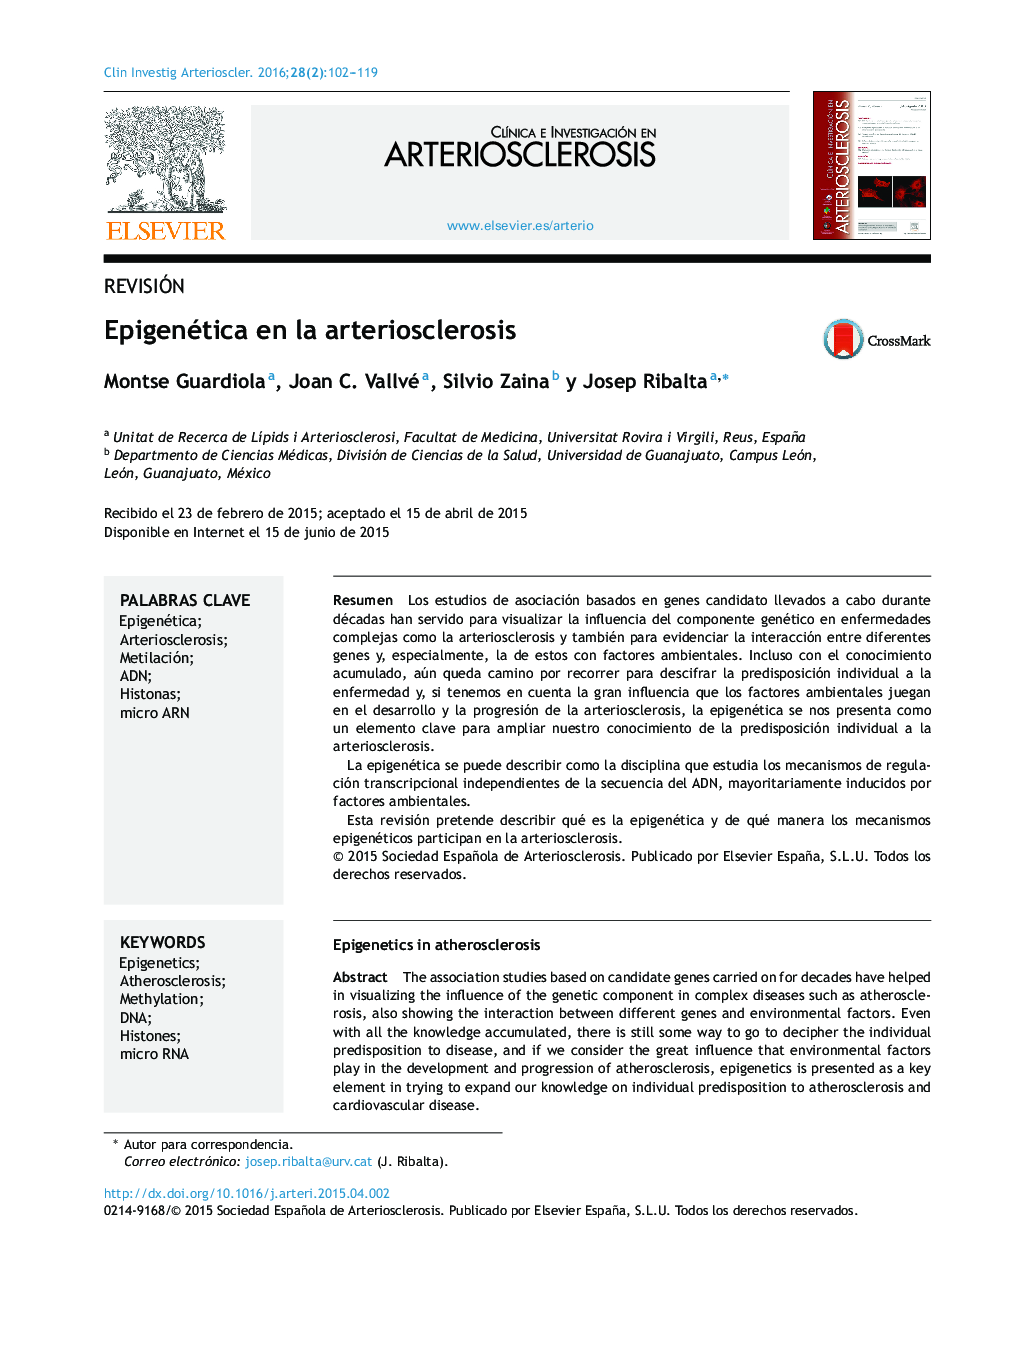 Epigenética en la arteriosclerosis